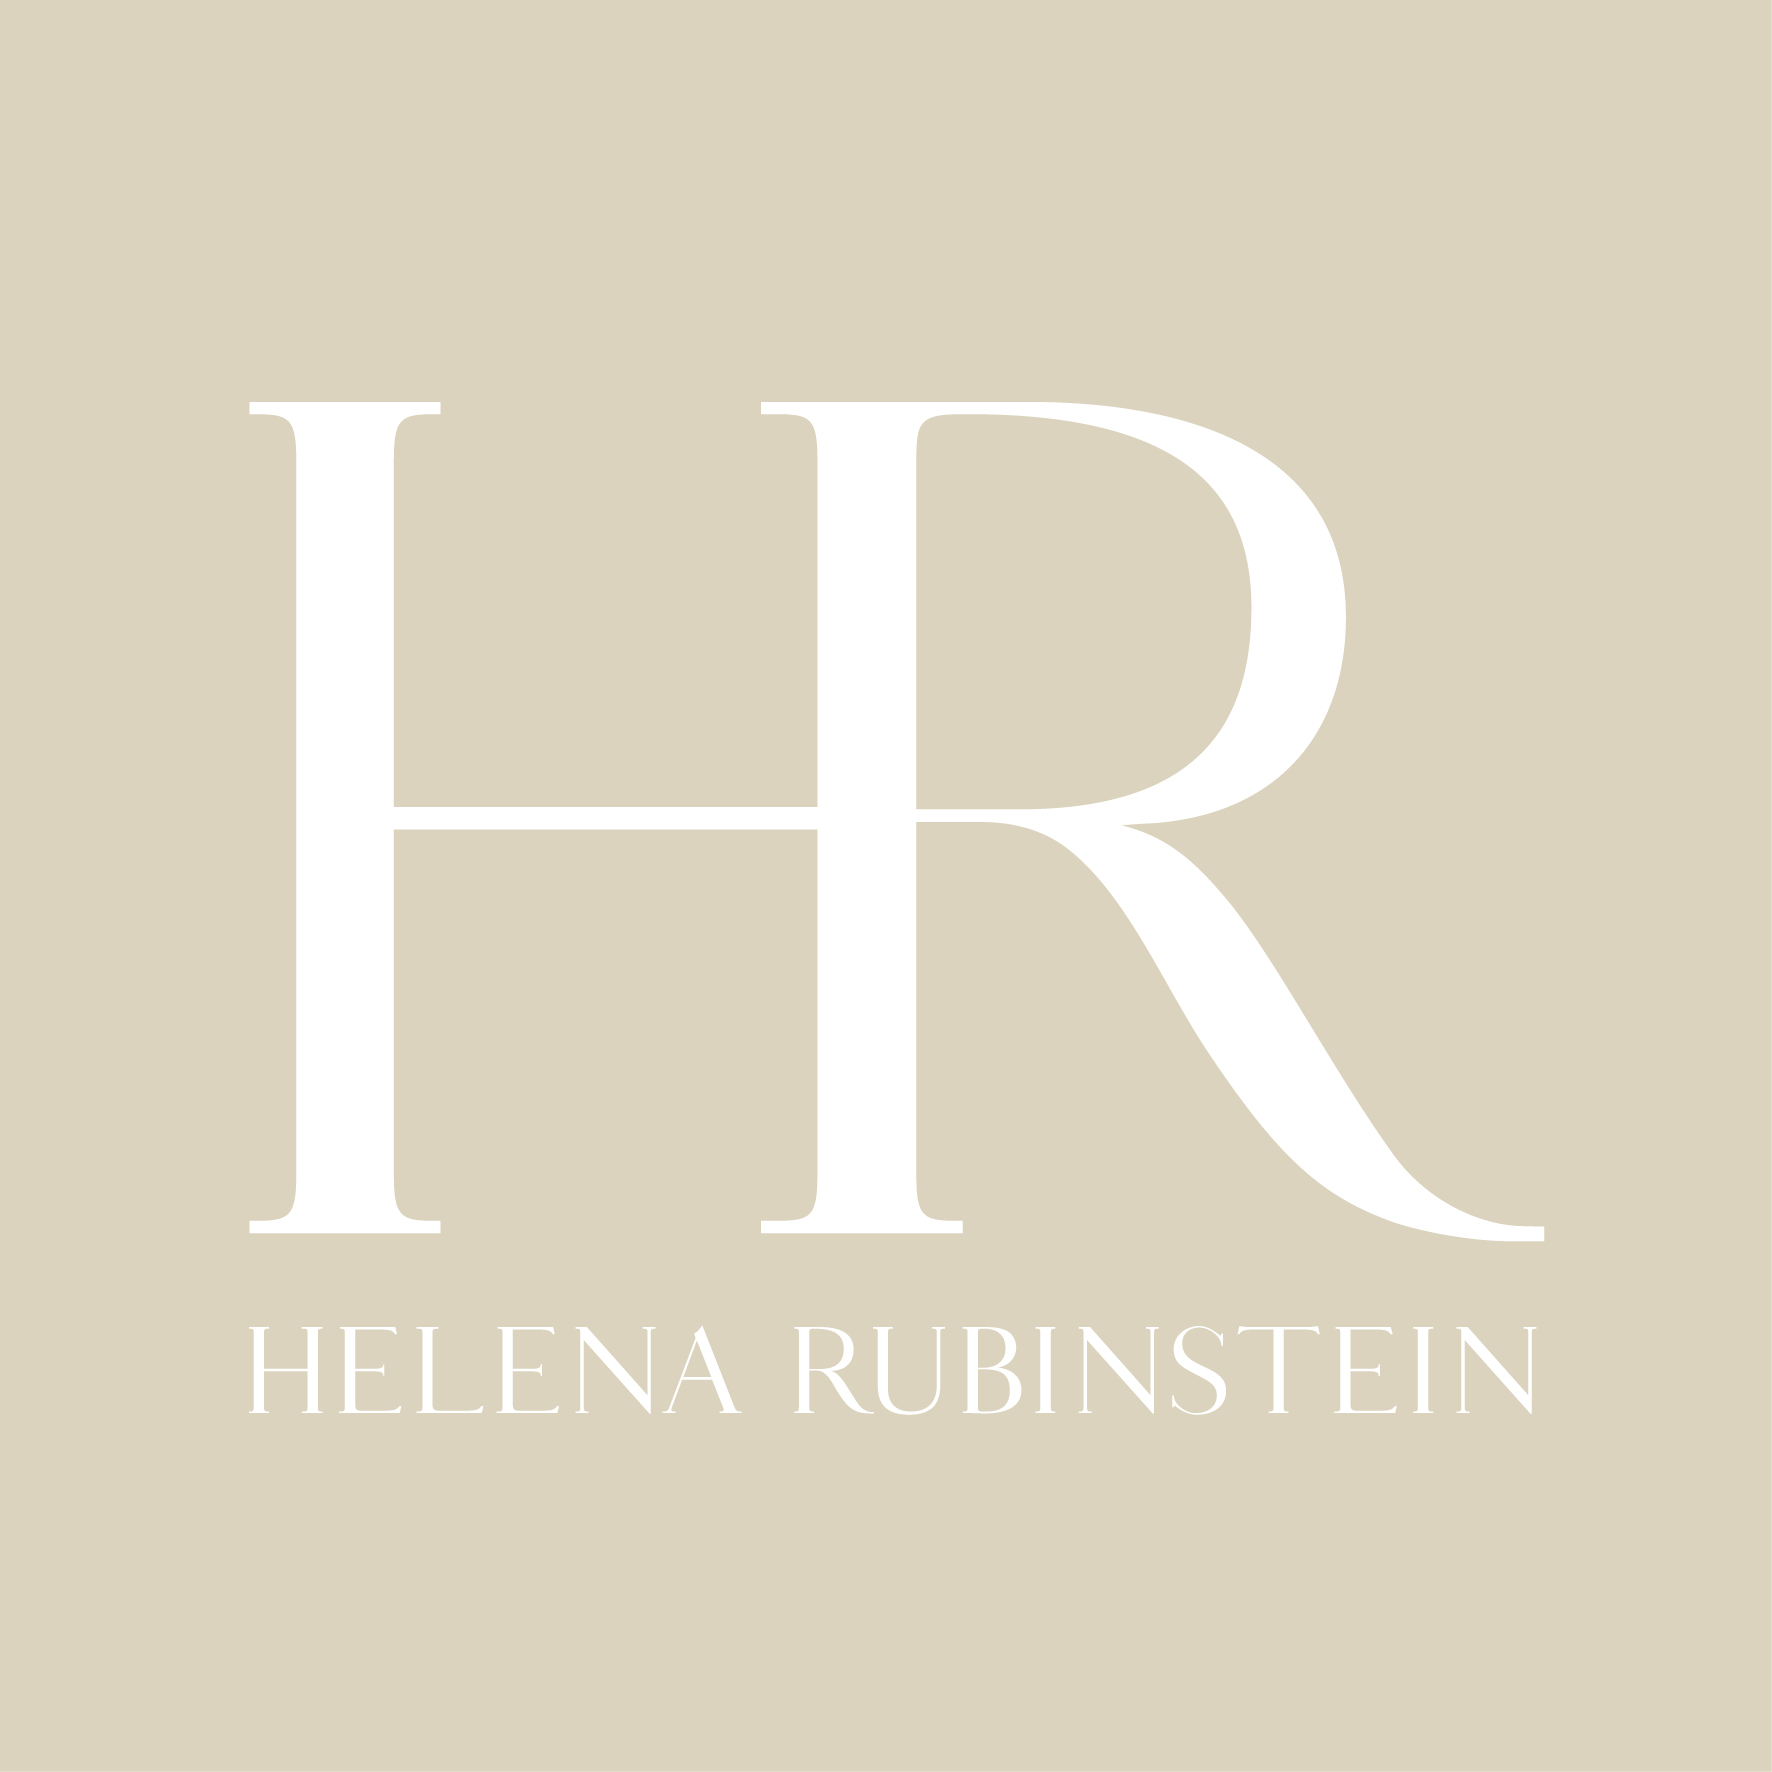 Helene Rubinstein